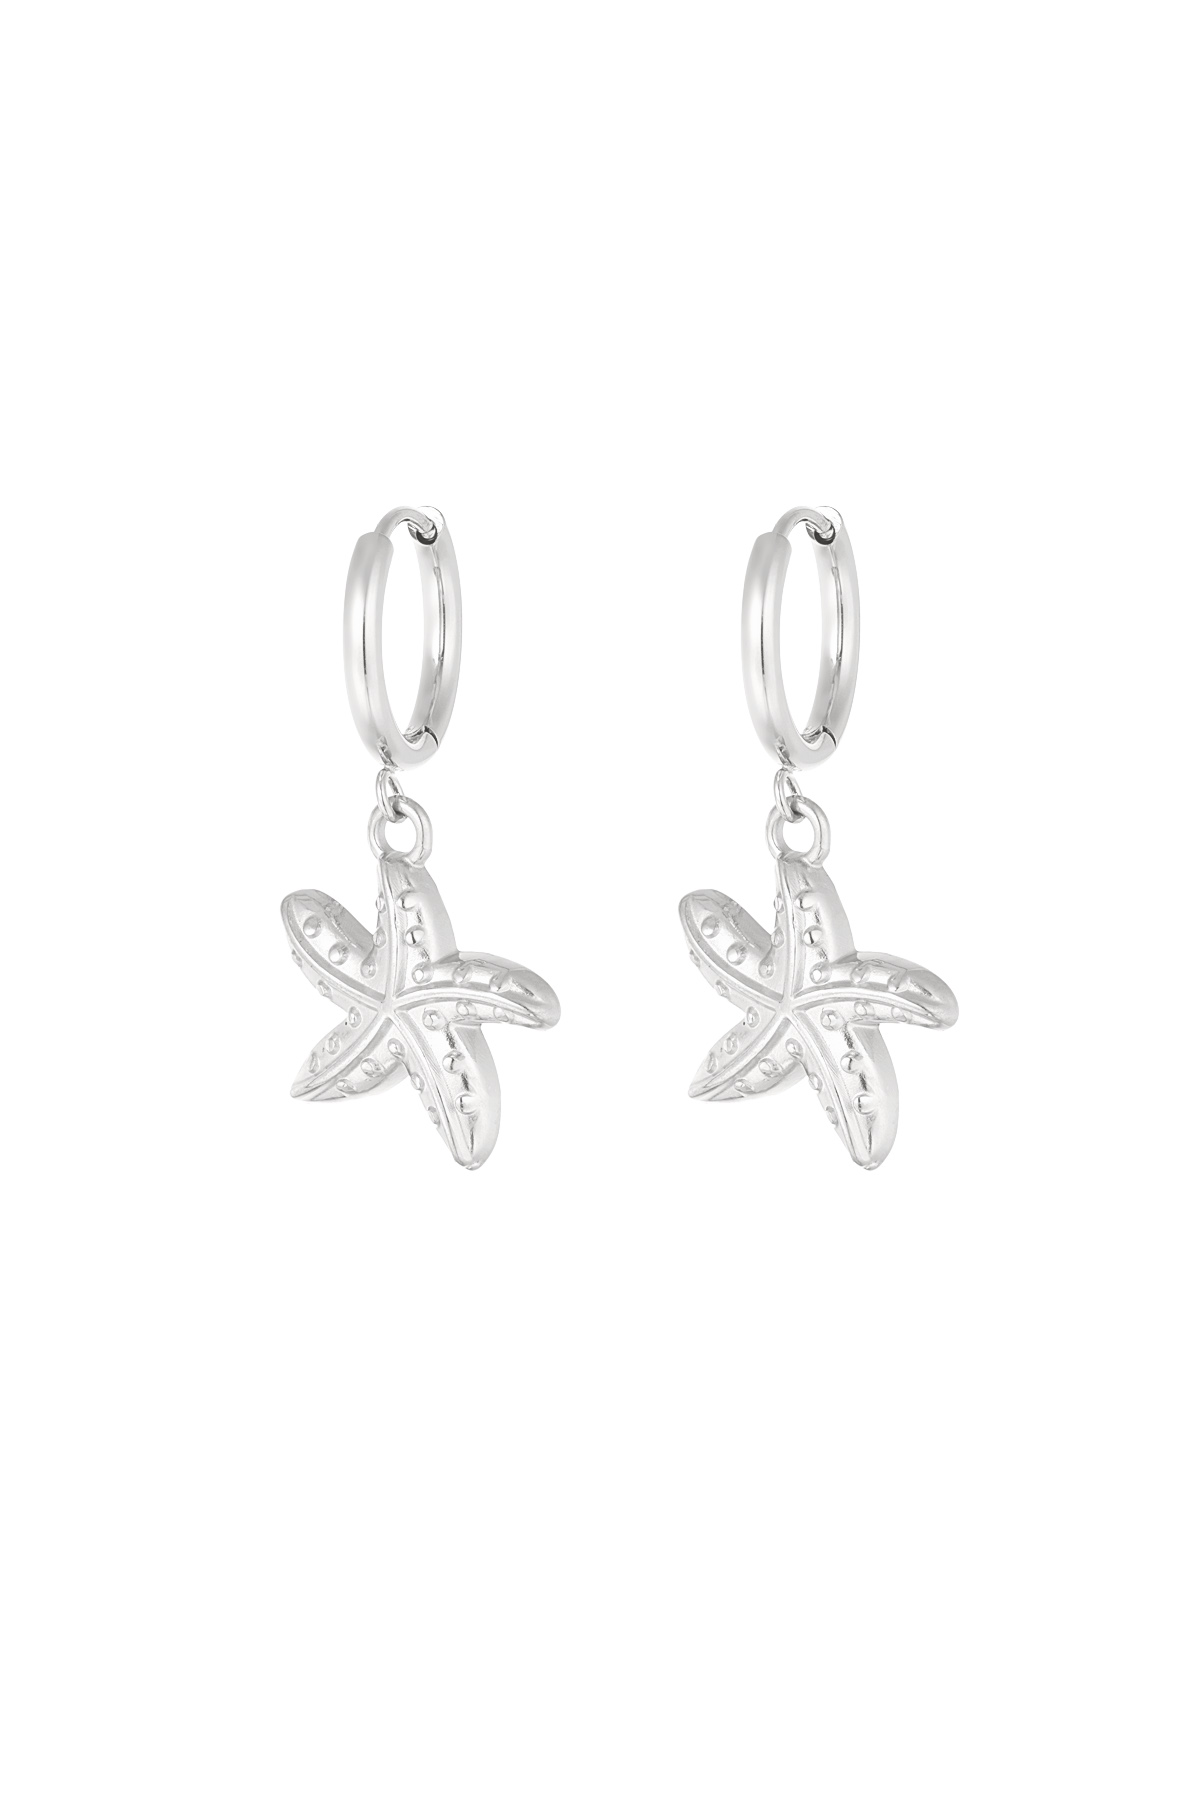 Orecchini speciali stella marina - argento